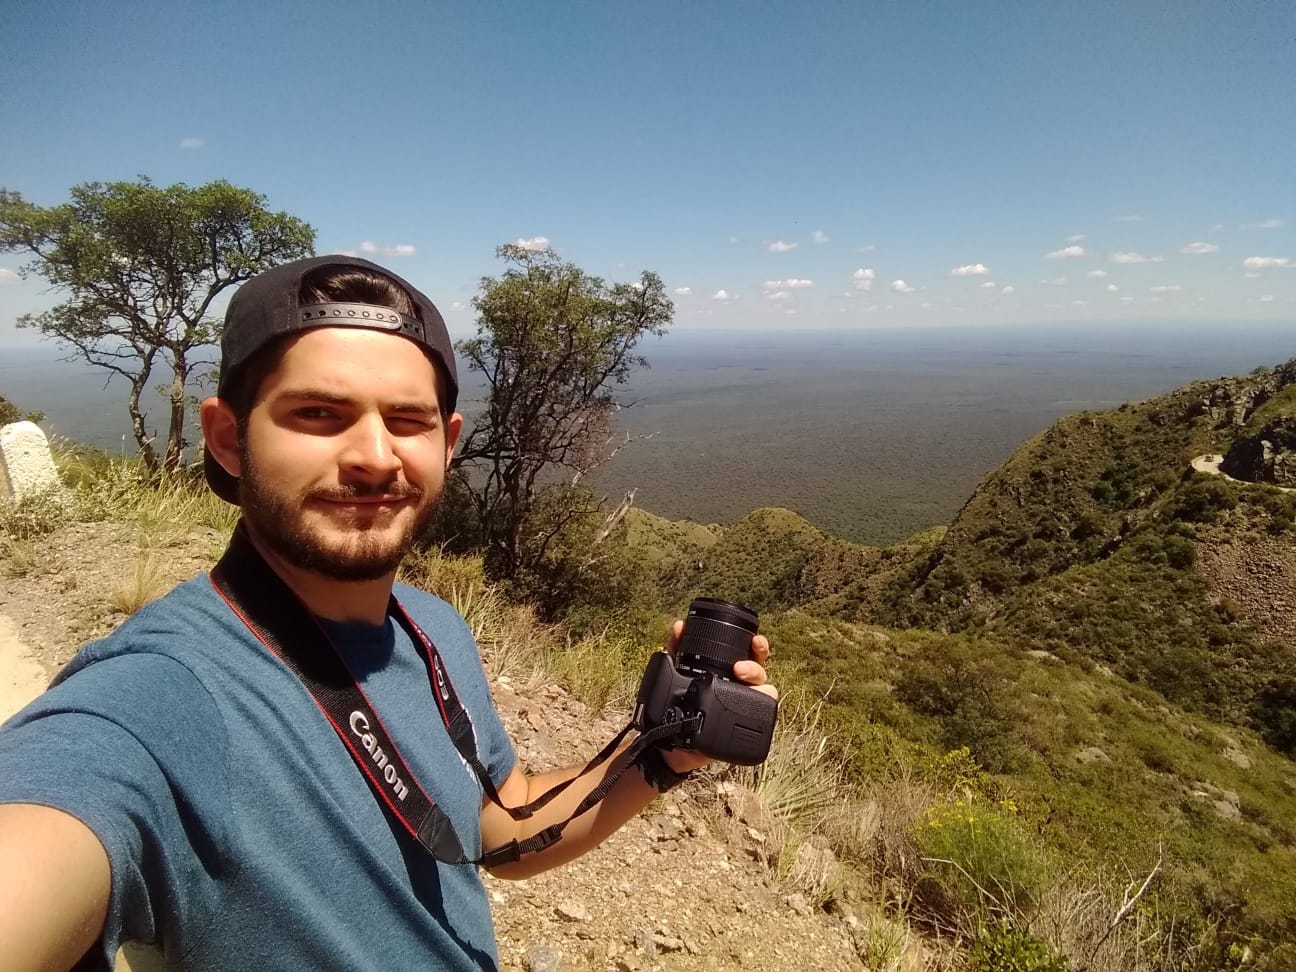 Franco sujentando una cámara frente a un paisaje